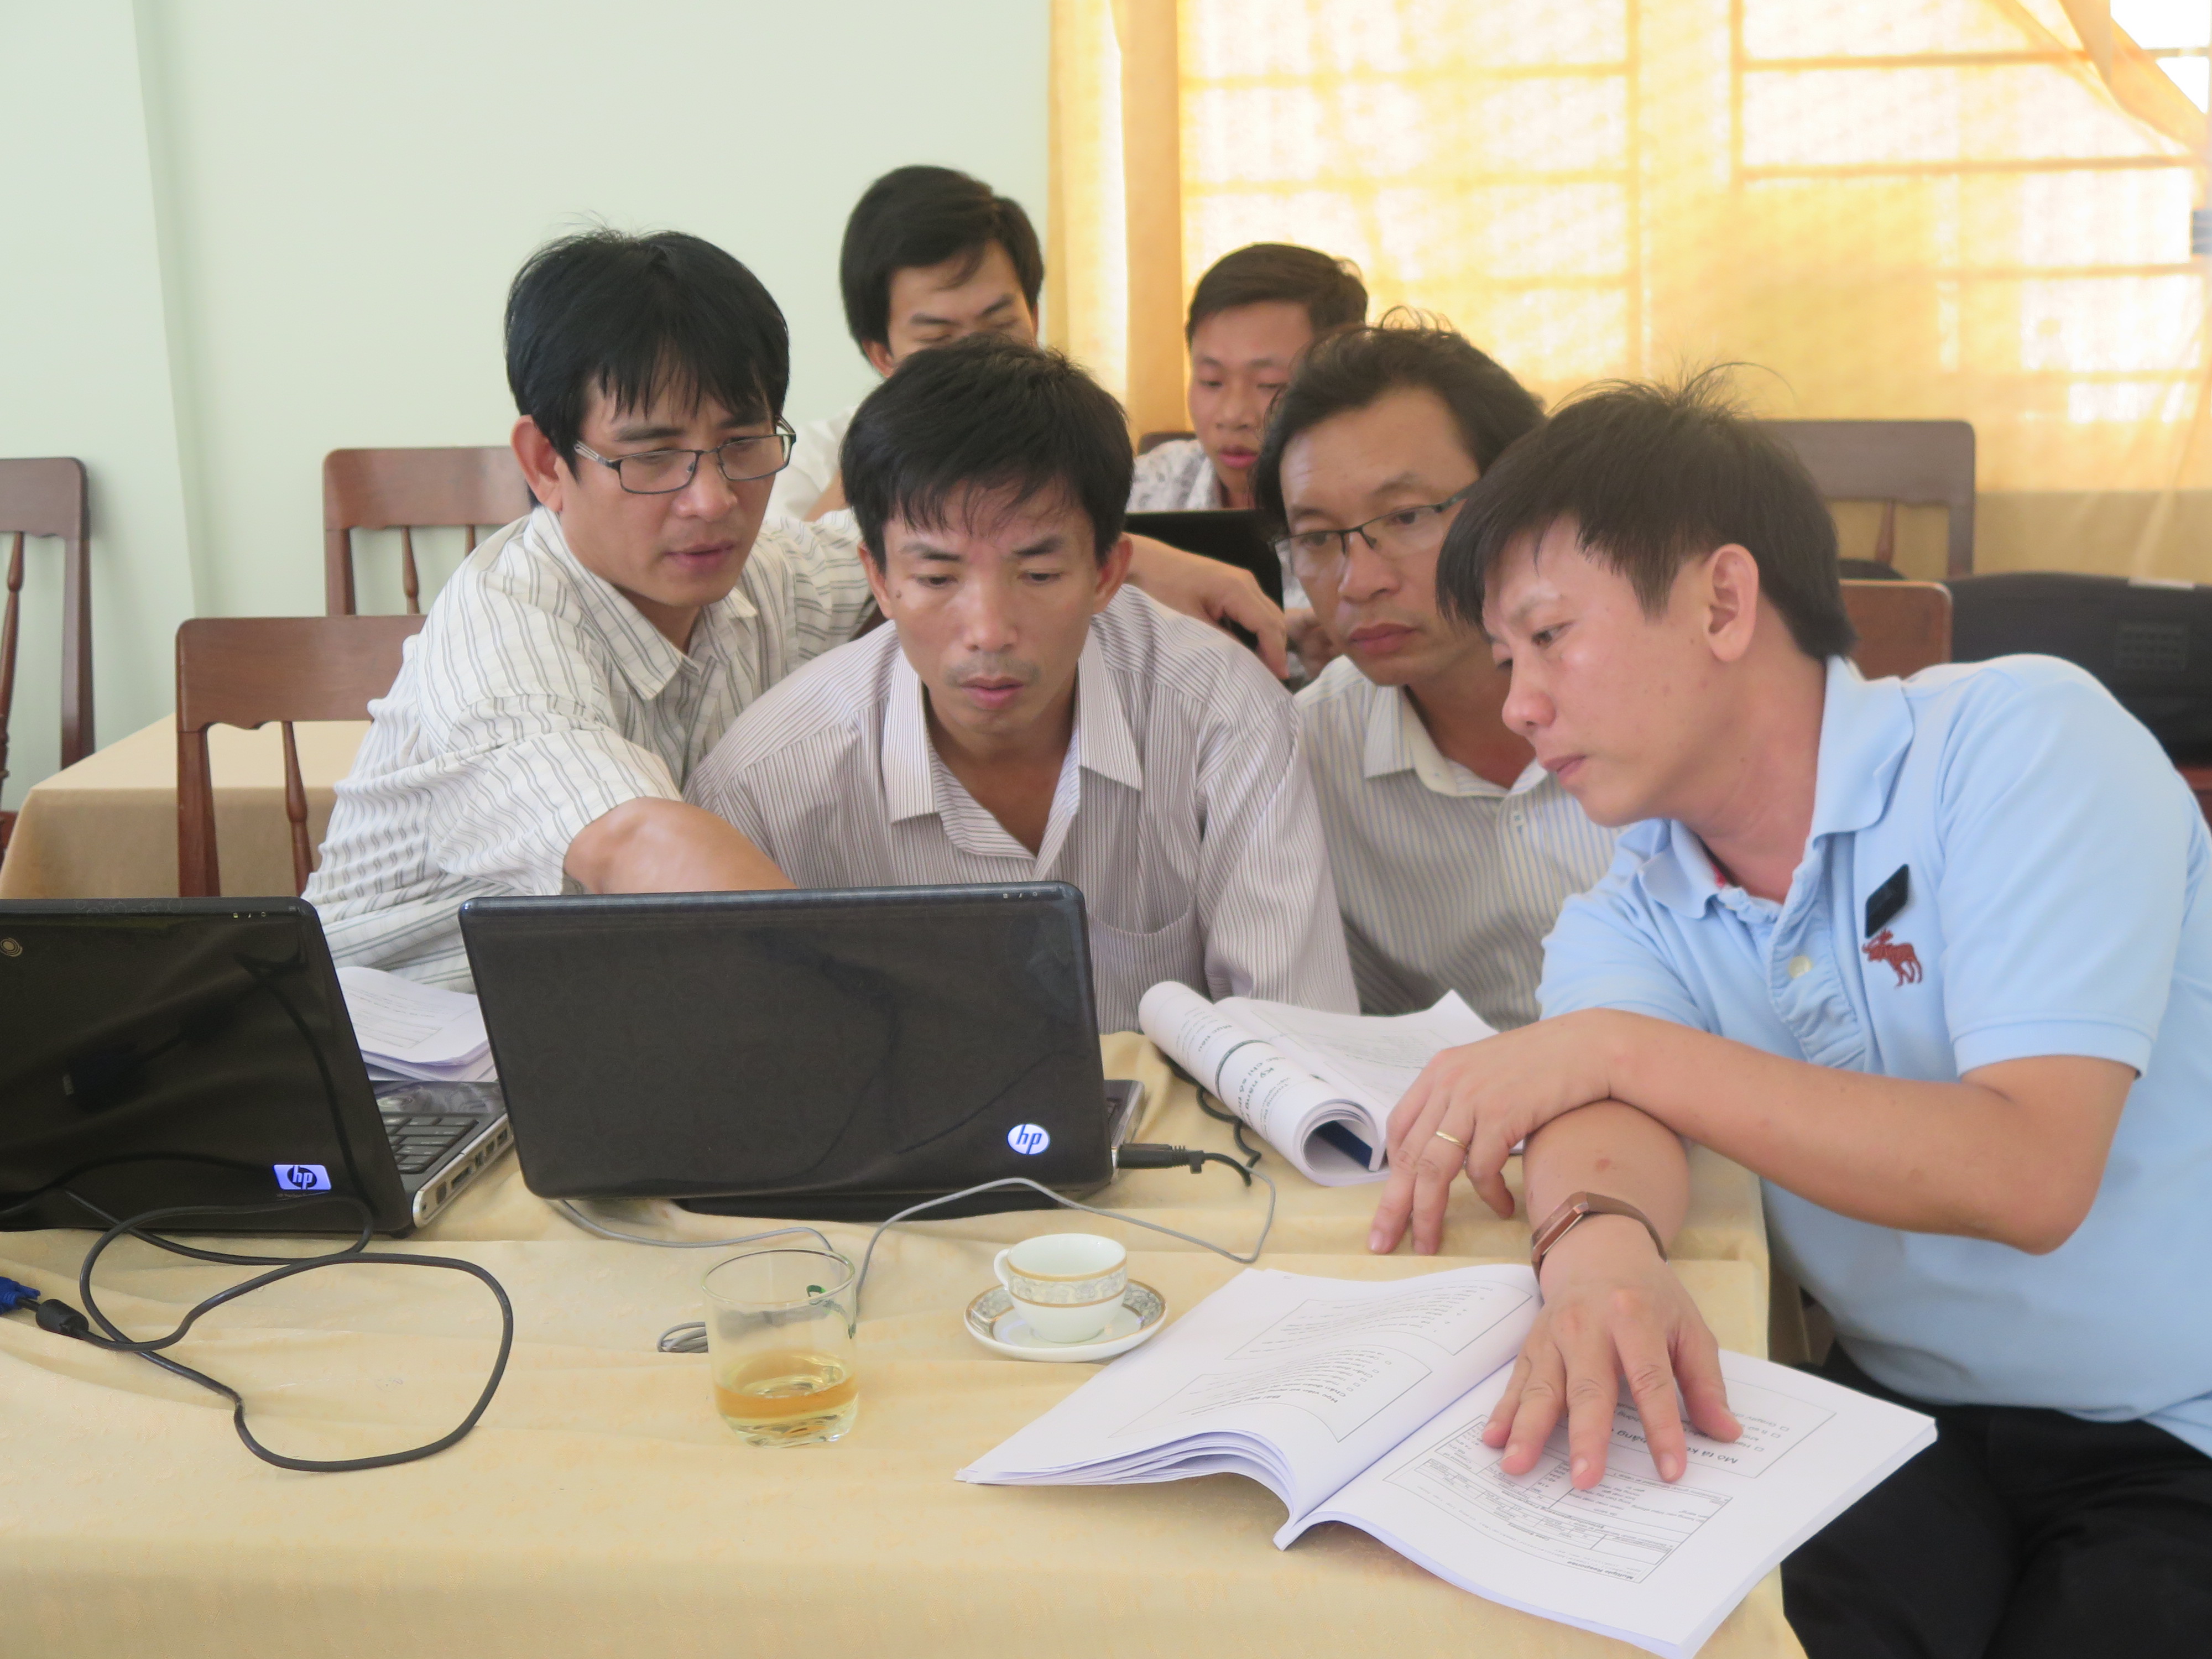 Phân tích dữ liệu trong nghiên cứu y tế” dành cho cán bộ y tế tại 6 tỉnh Miền trung và Tây nguyên, Việt Nam